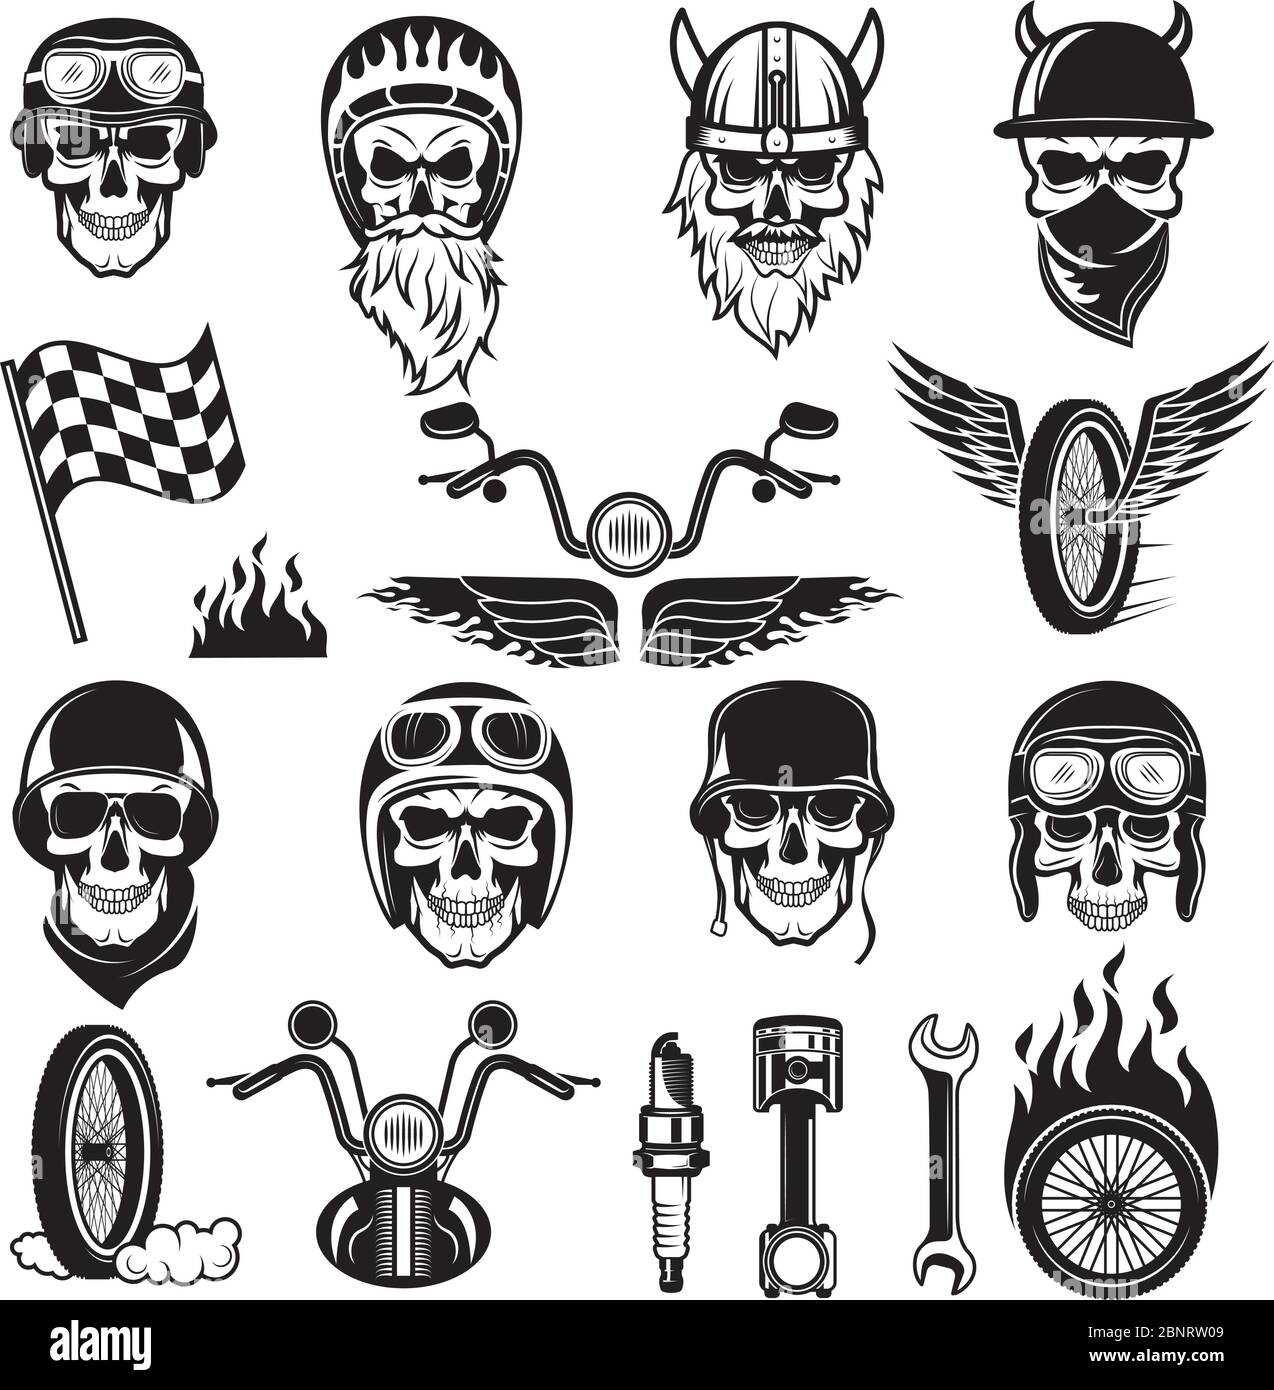 Biker-Symbole. Schädel Fahrrad Fahnen Rad Feuer Knochen Motor Motorrad Vektor Silhouetten Stock Vektor